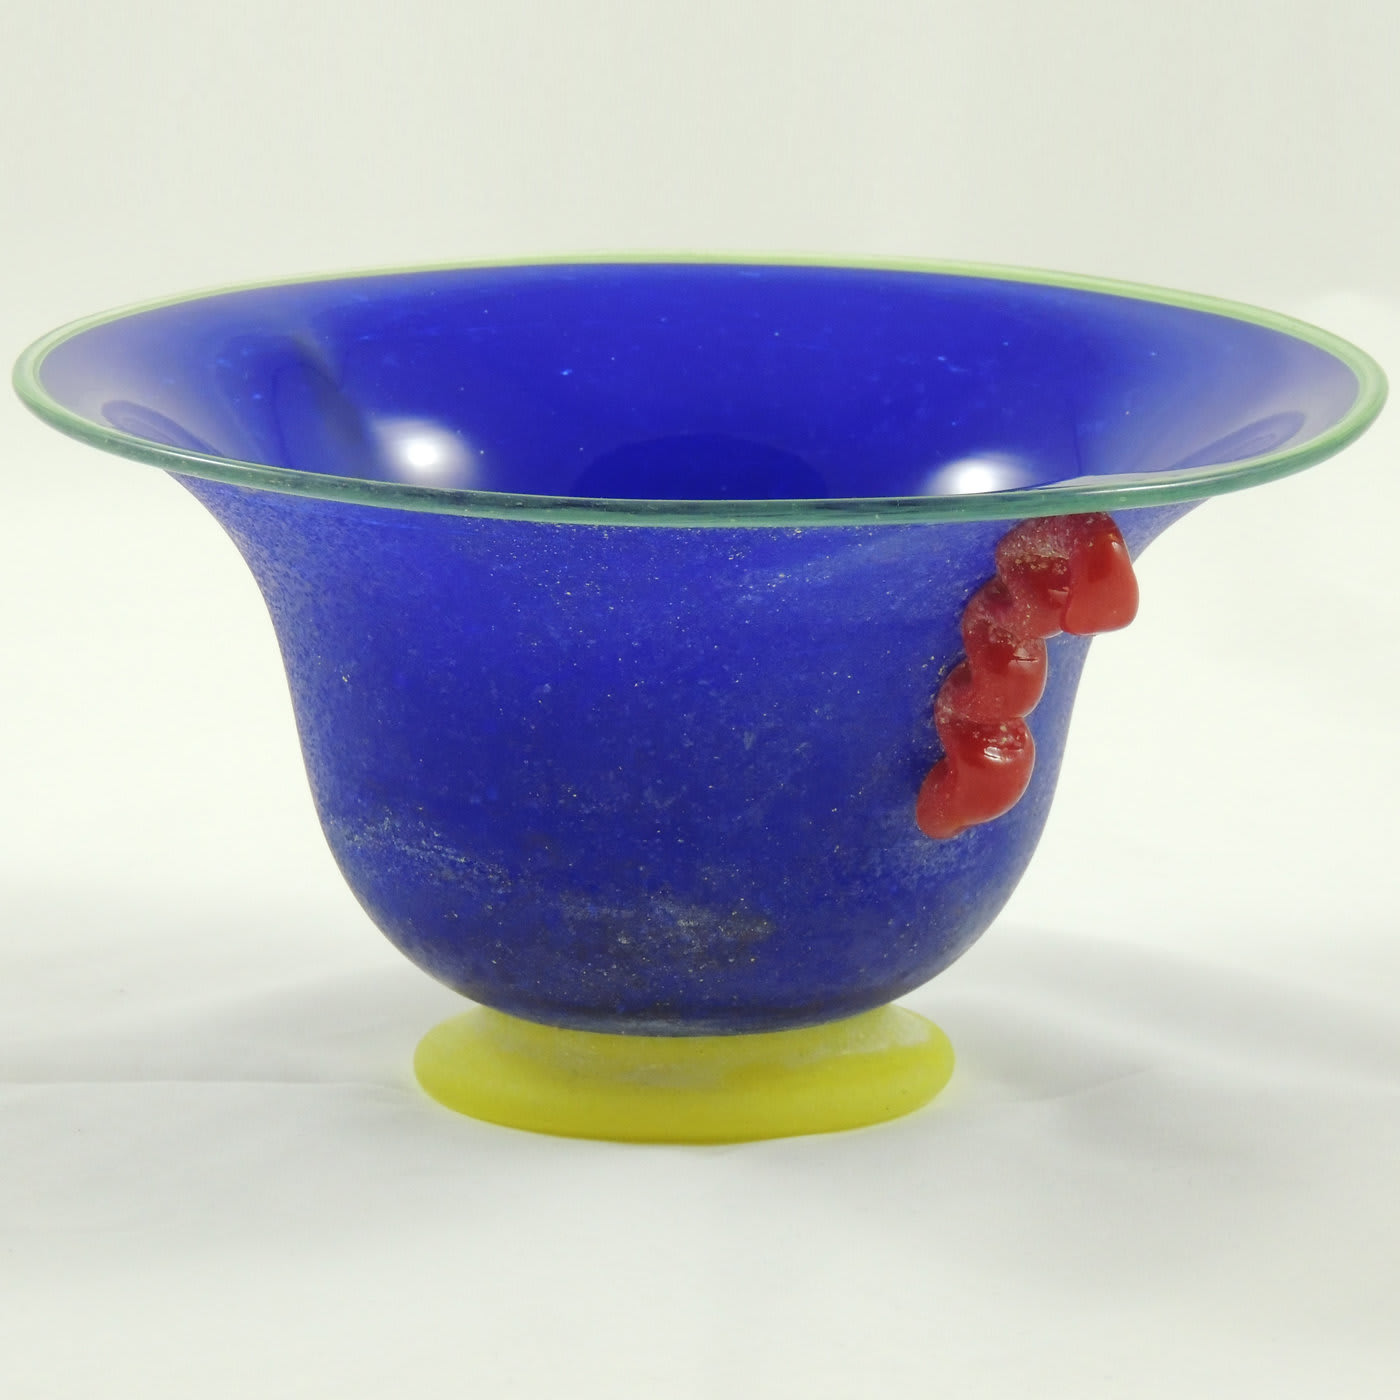 Scavo Multicolored Blue Bowl - Gambaro e Tagliapietra